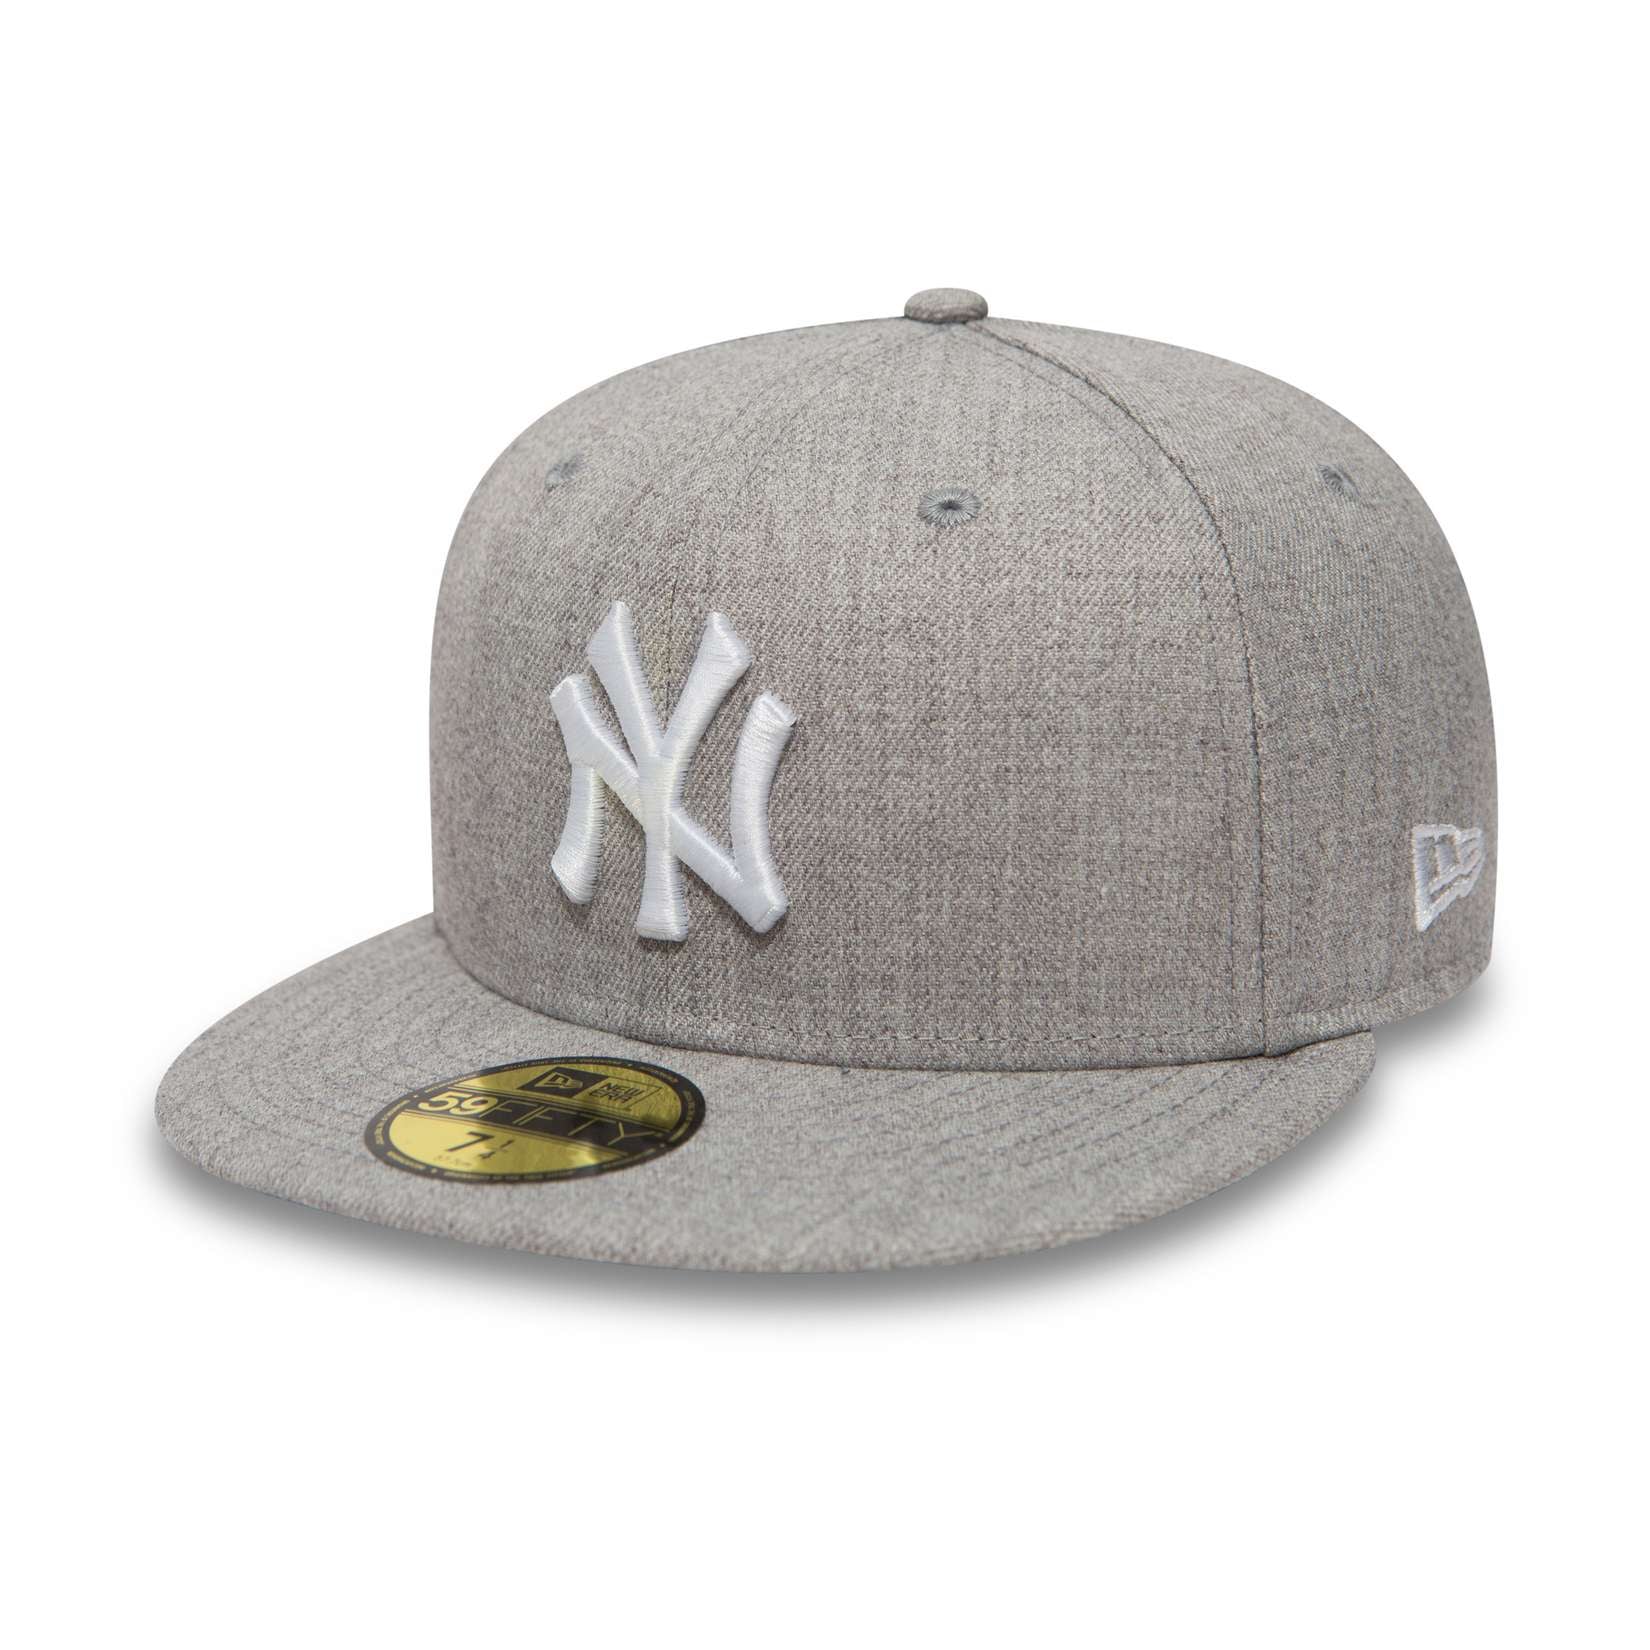 New Era - MLB New York Yankees Basic Heather Fitted Cap - Grau